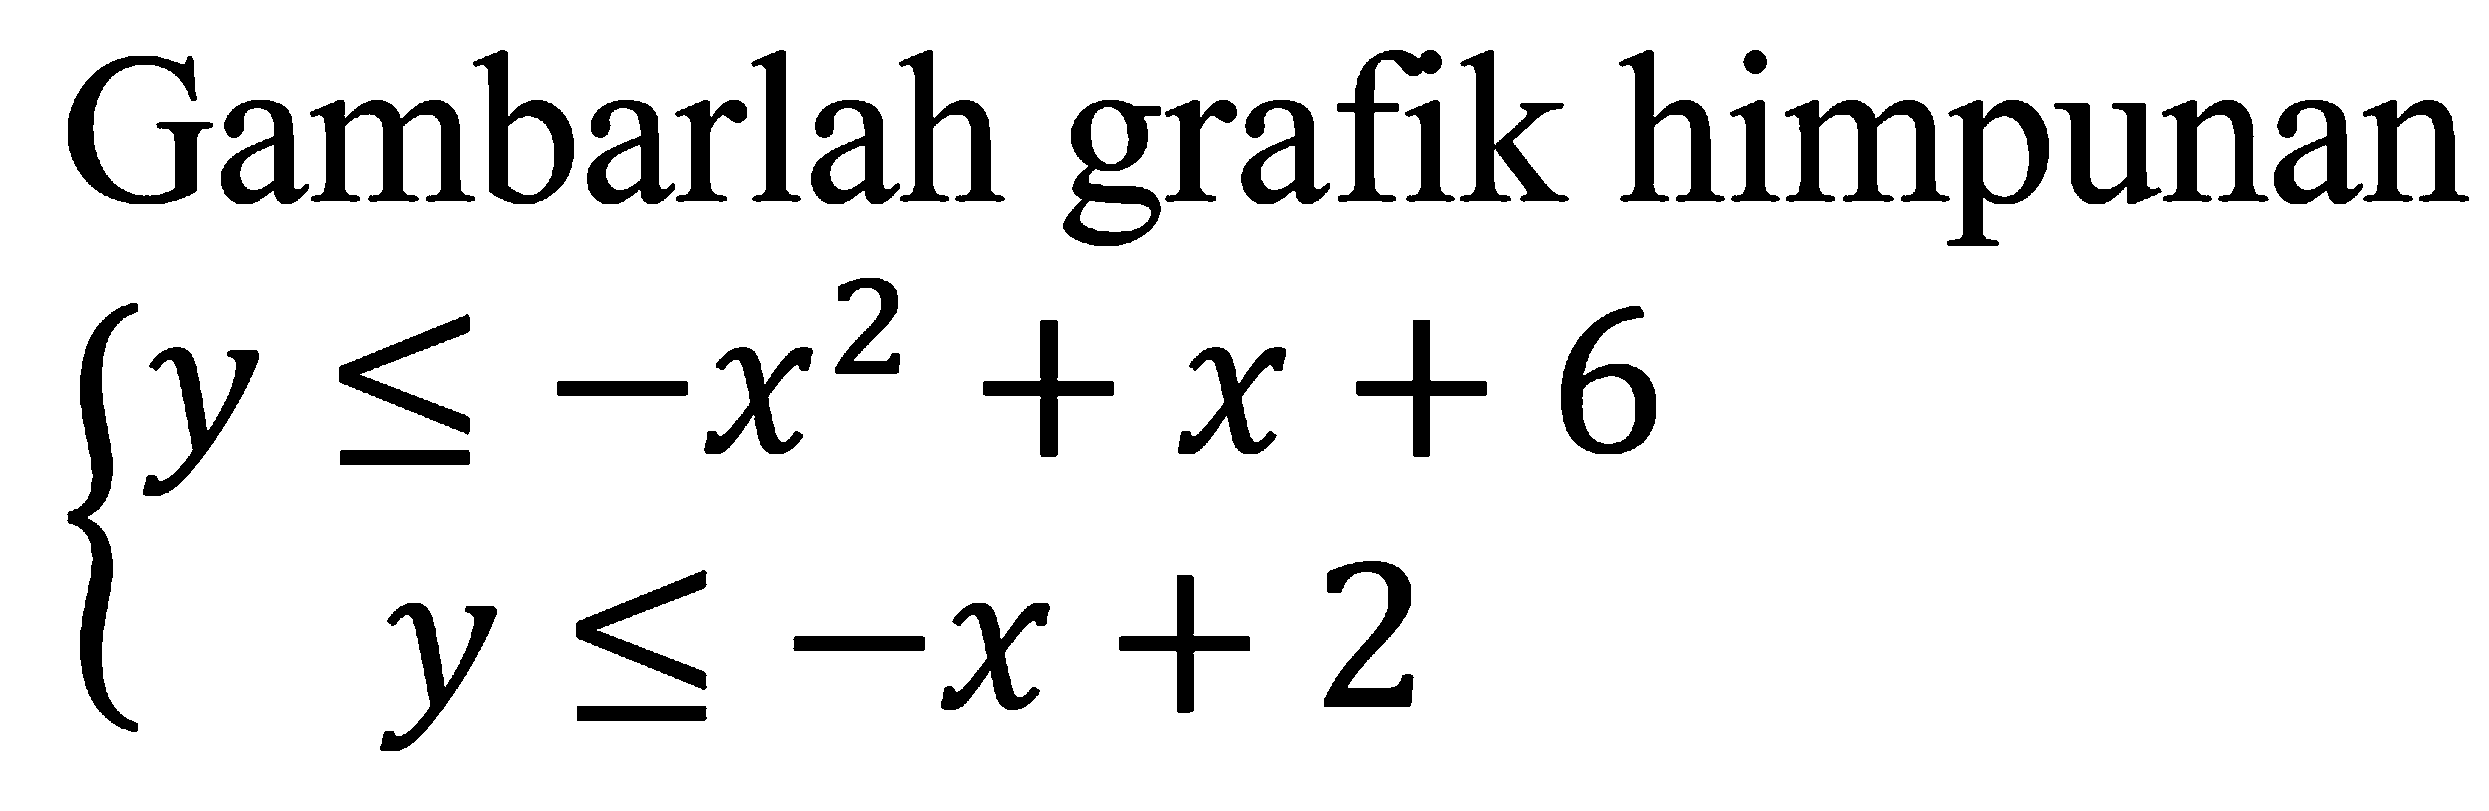 Gambarlah himpunan grafik y<=-x^2+x+6 y<=-x+2